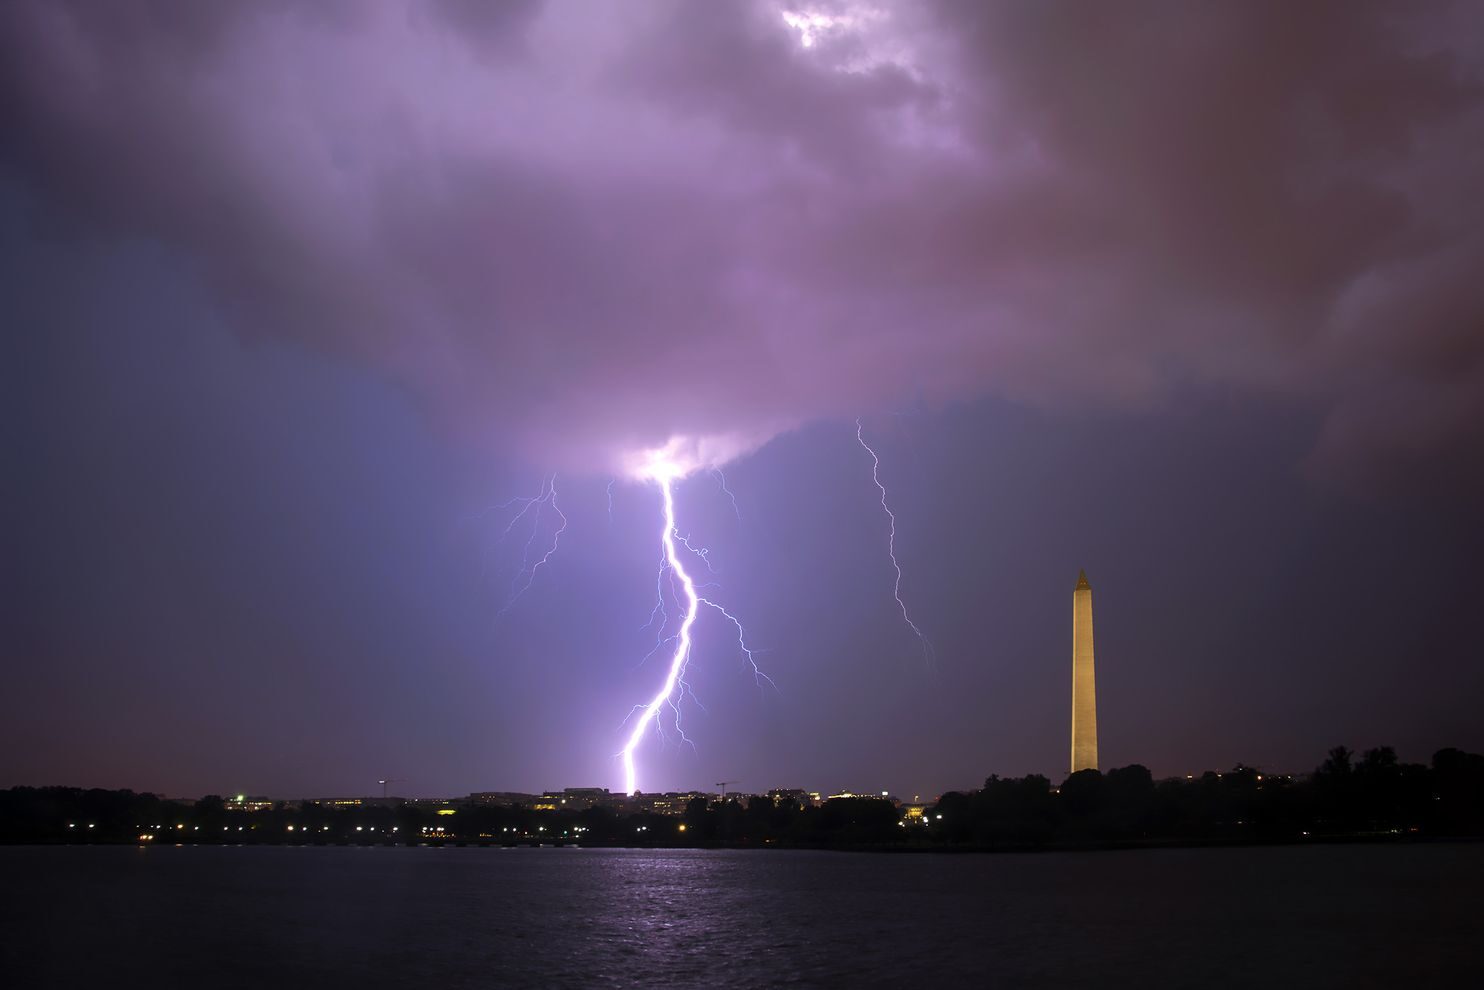 One of many lightning flashes in Washington last night